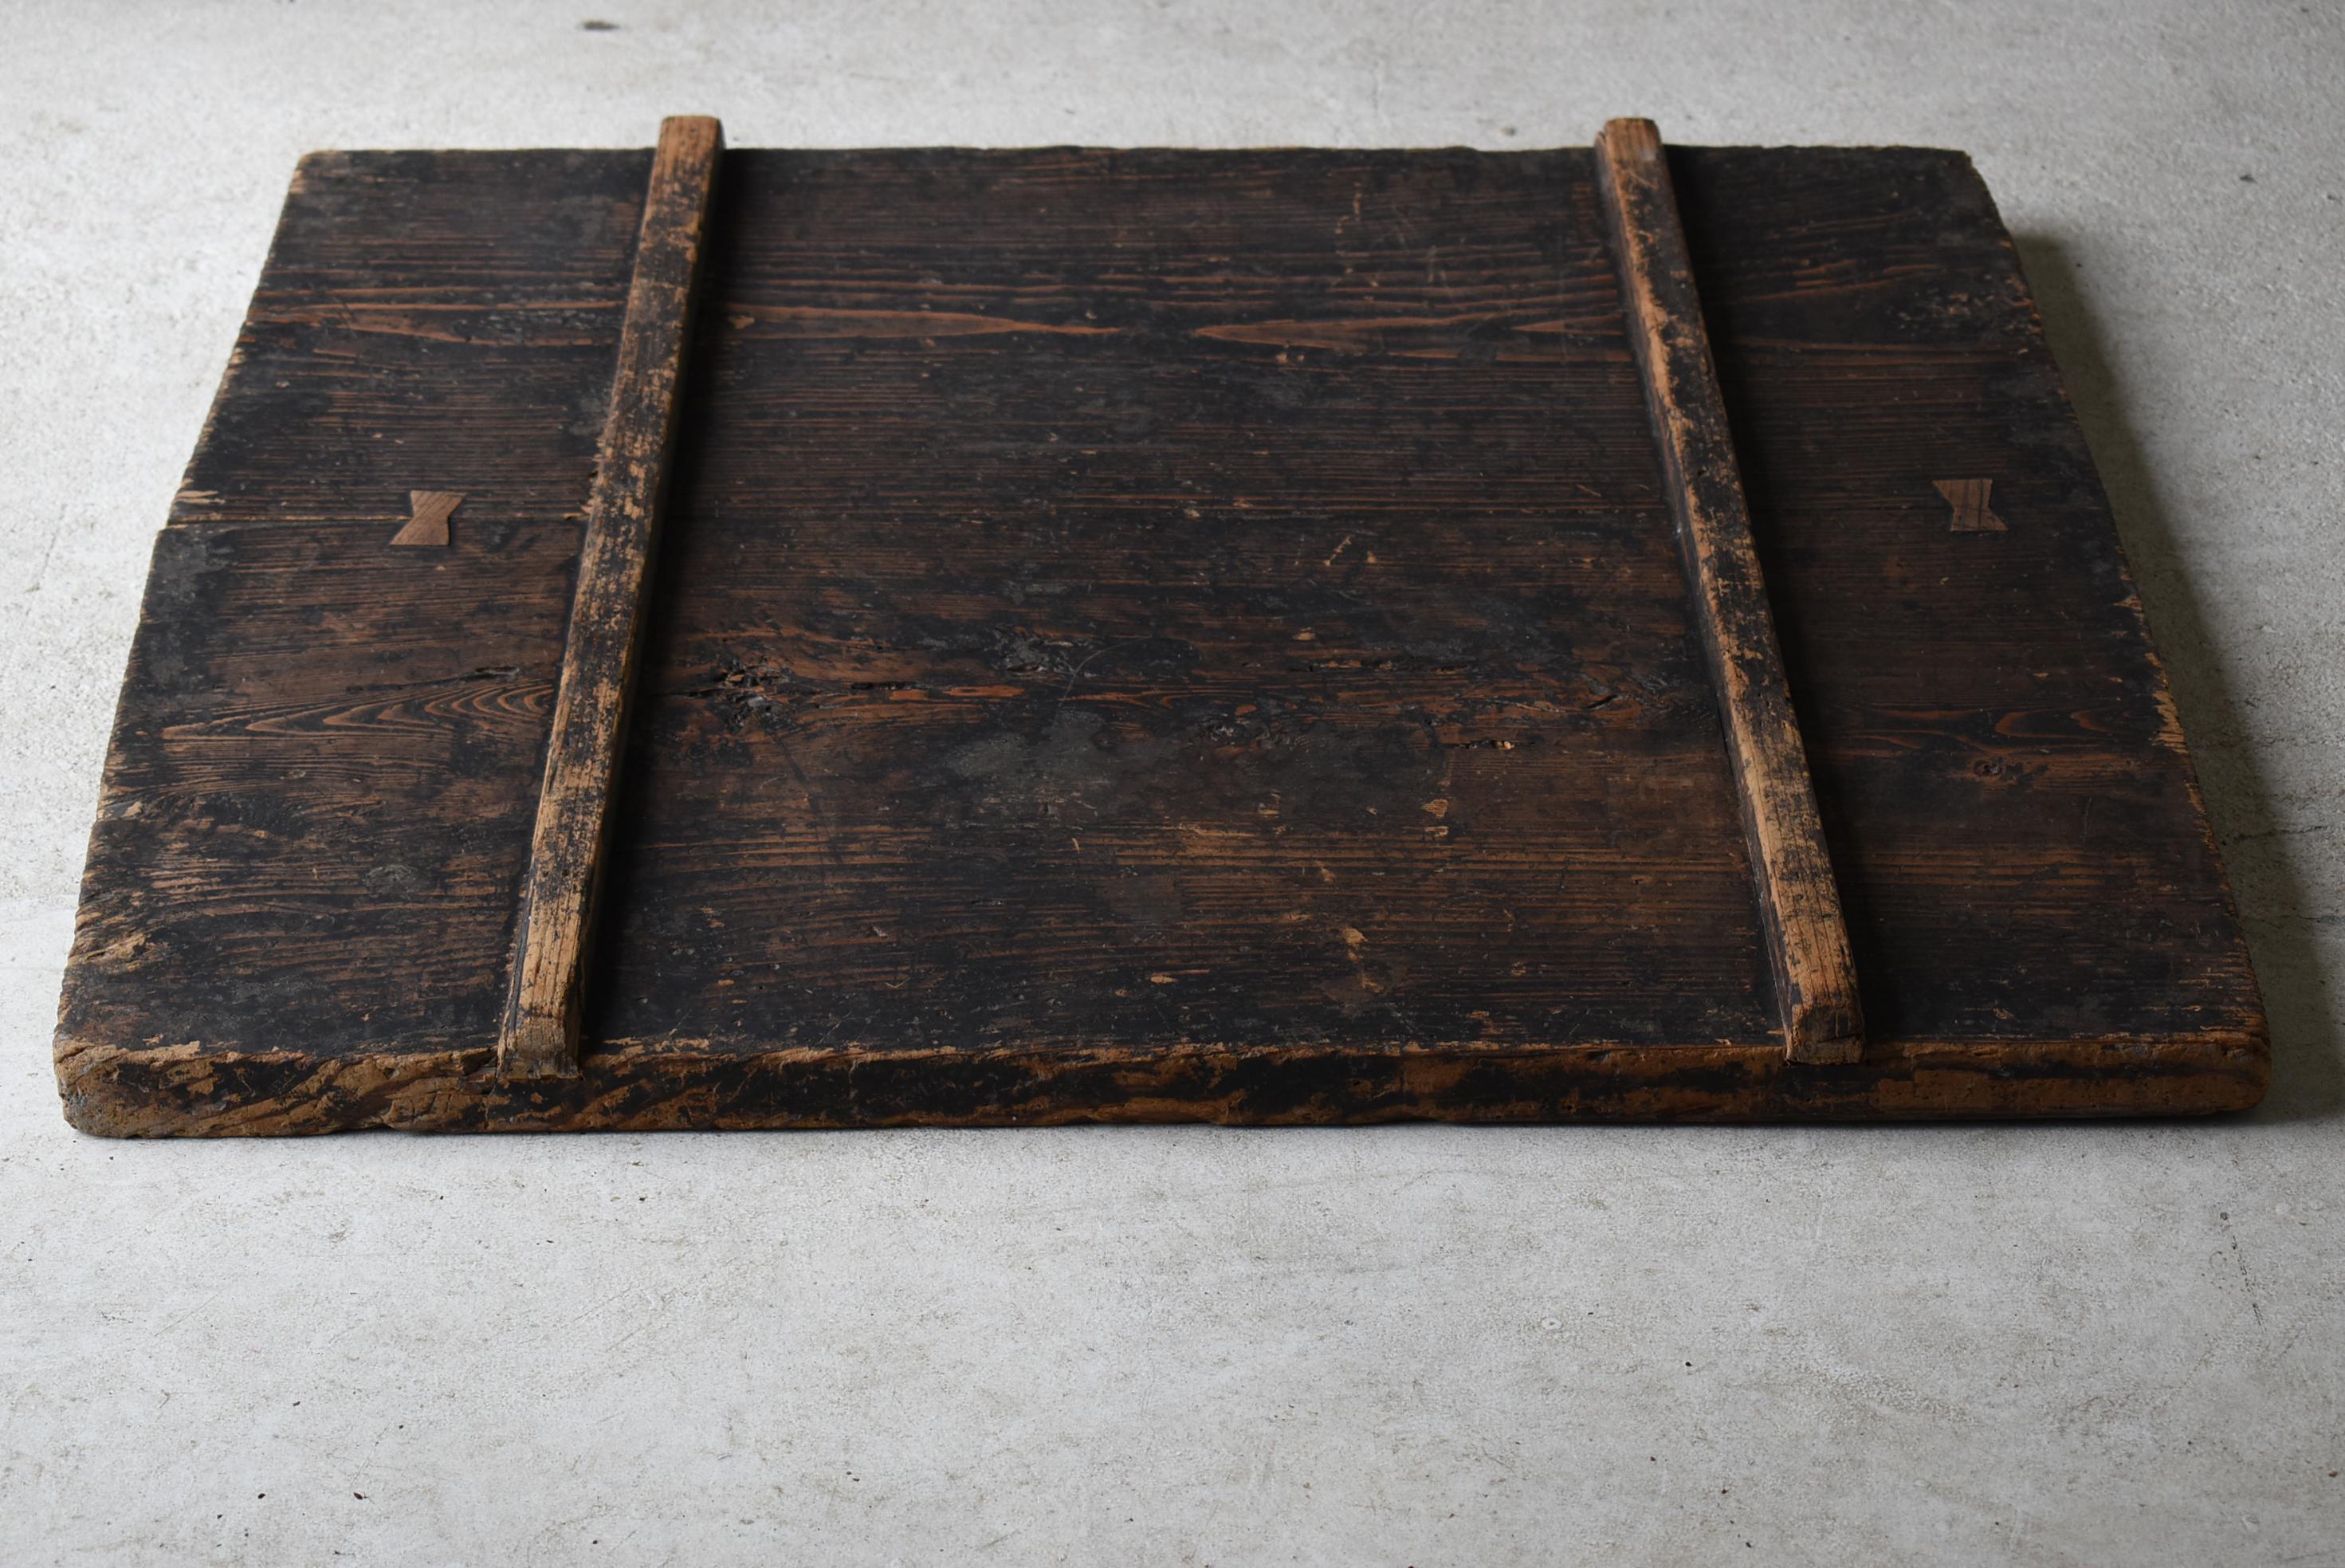 Pine Japanese Antique Wabi Sabi Wooden Board 1860s-1900s / Exhibition Stand Mingei